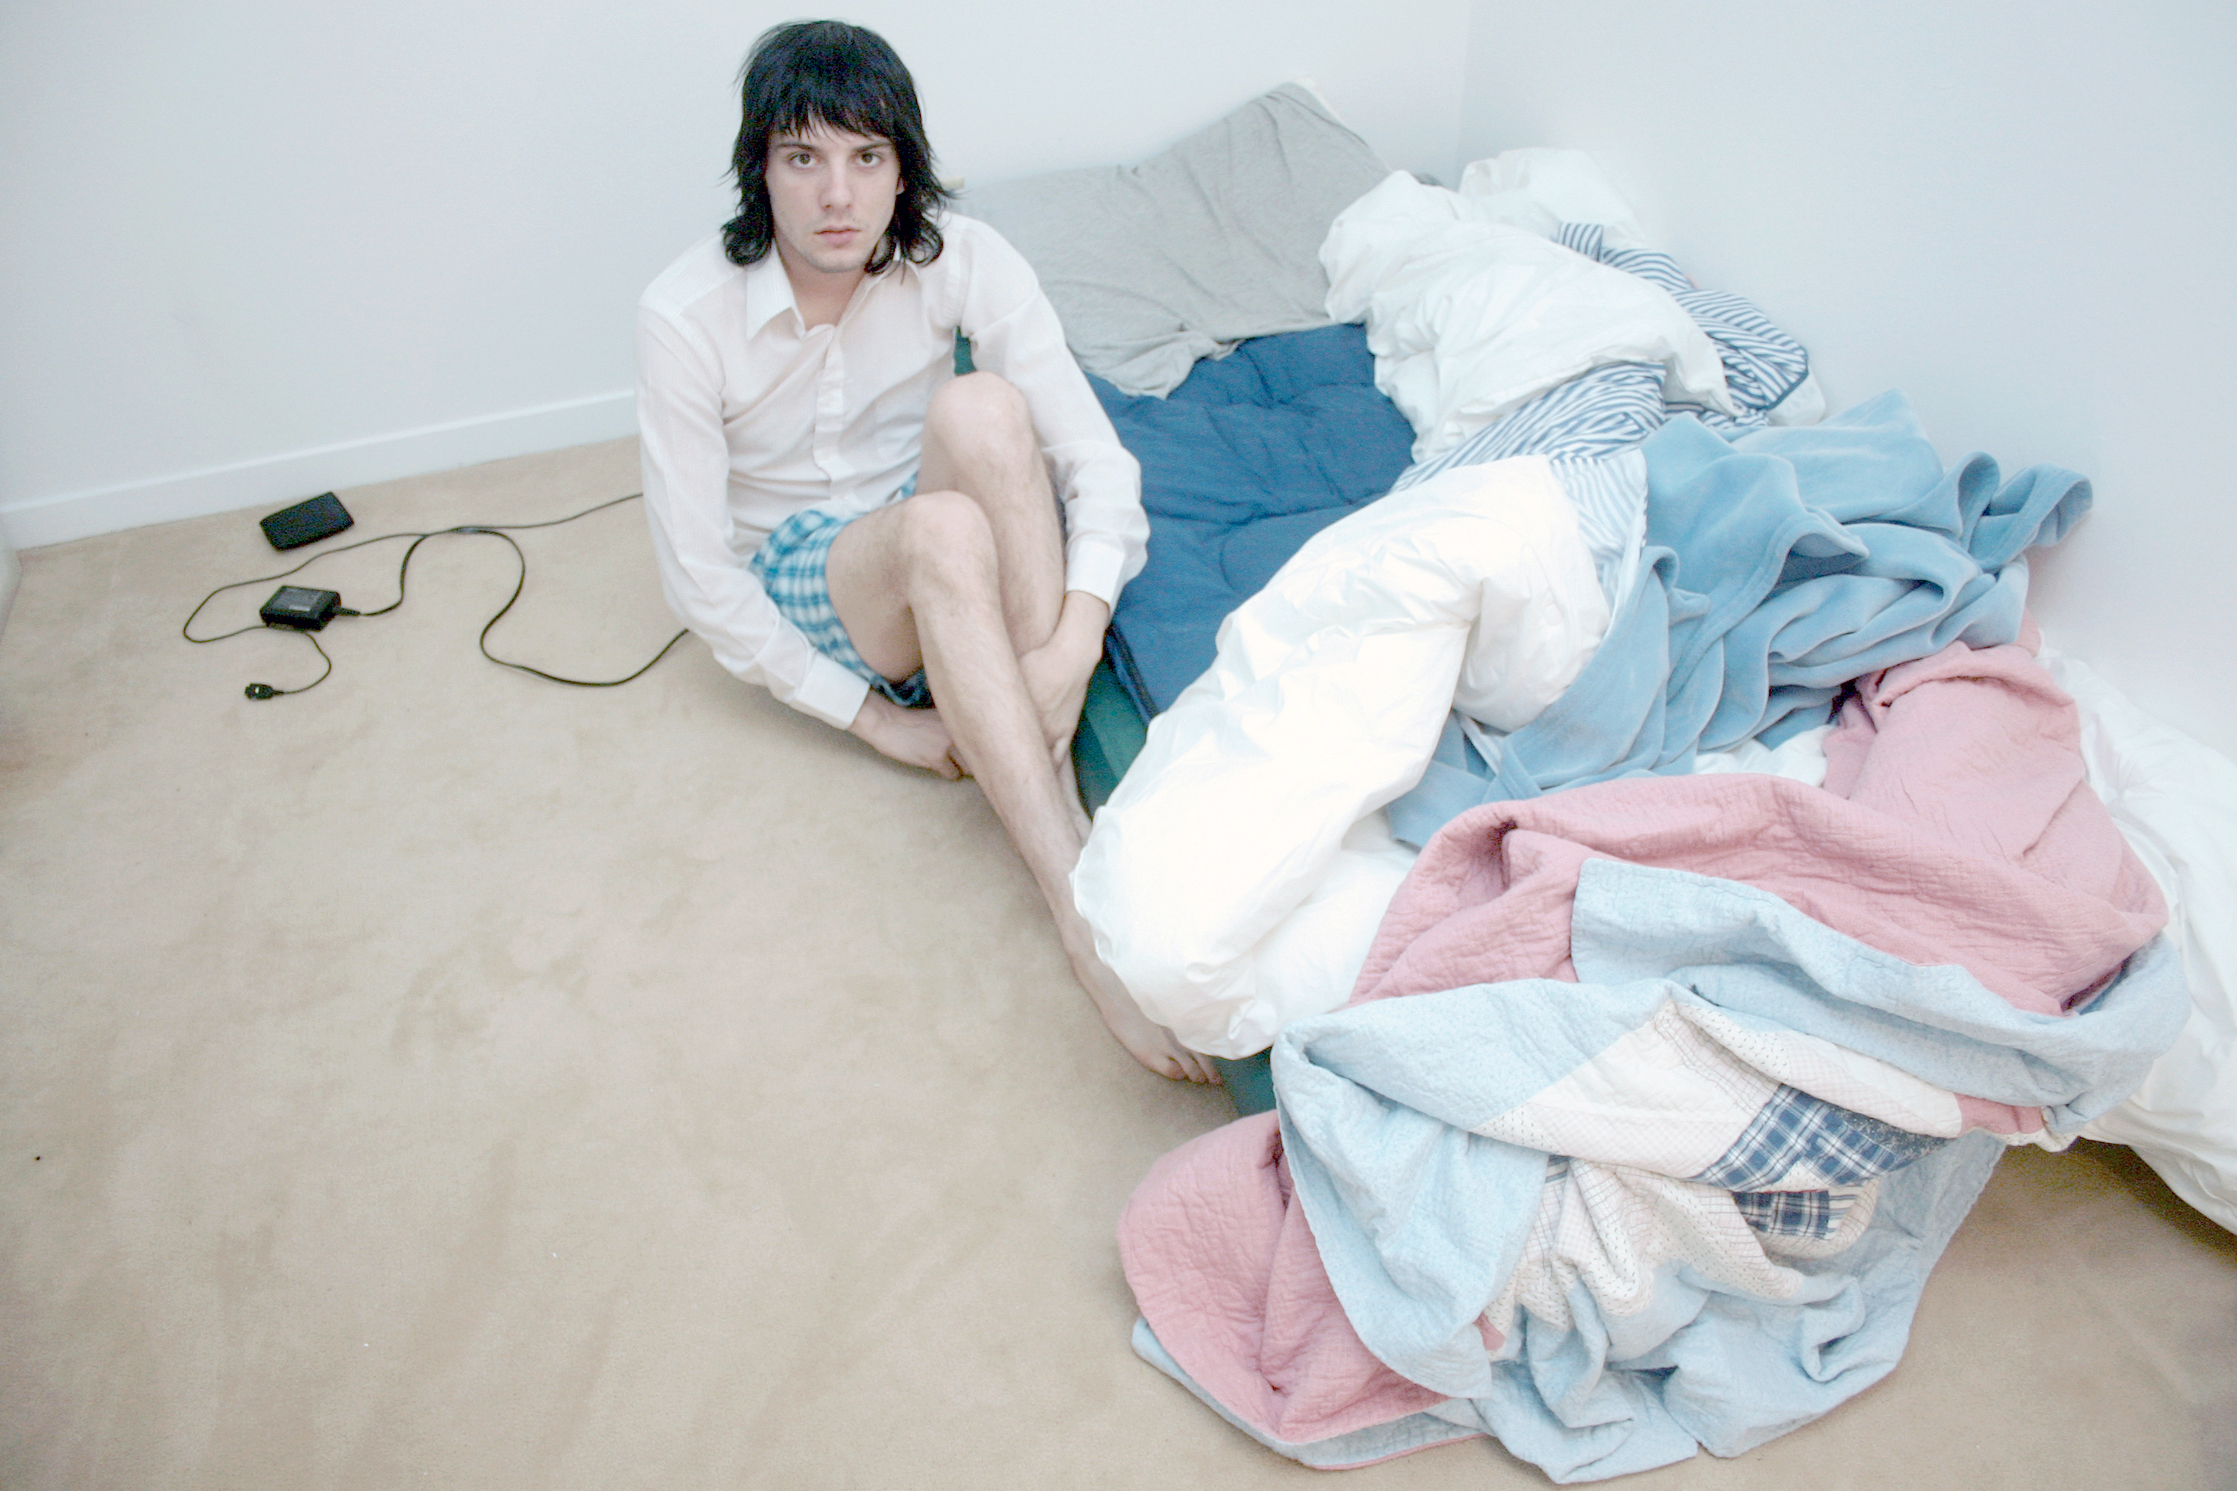 Luscious Quilts over Air Mattress, Selfie, 2005